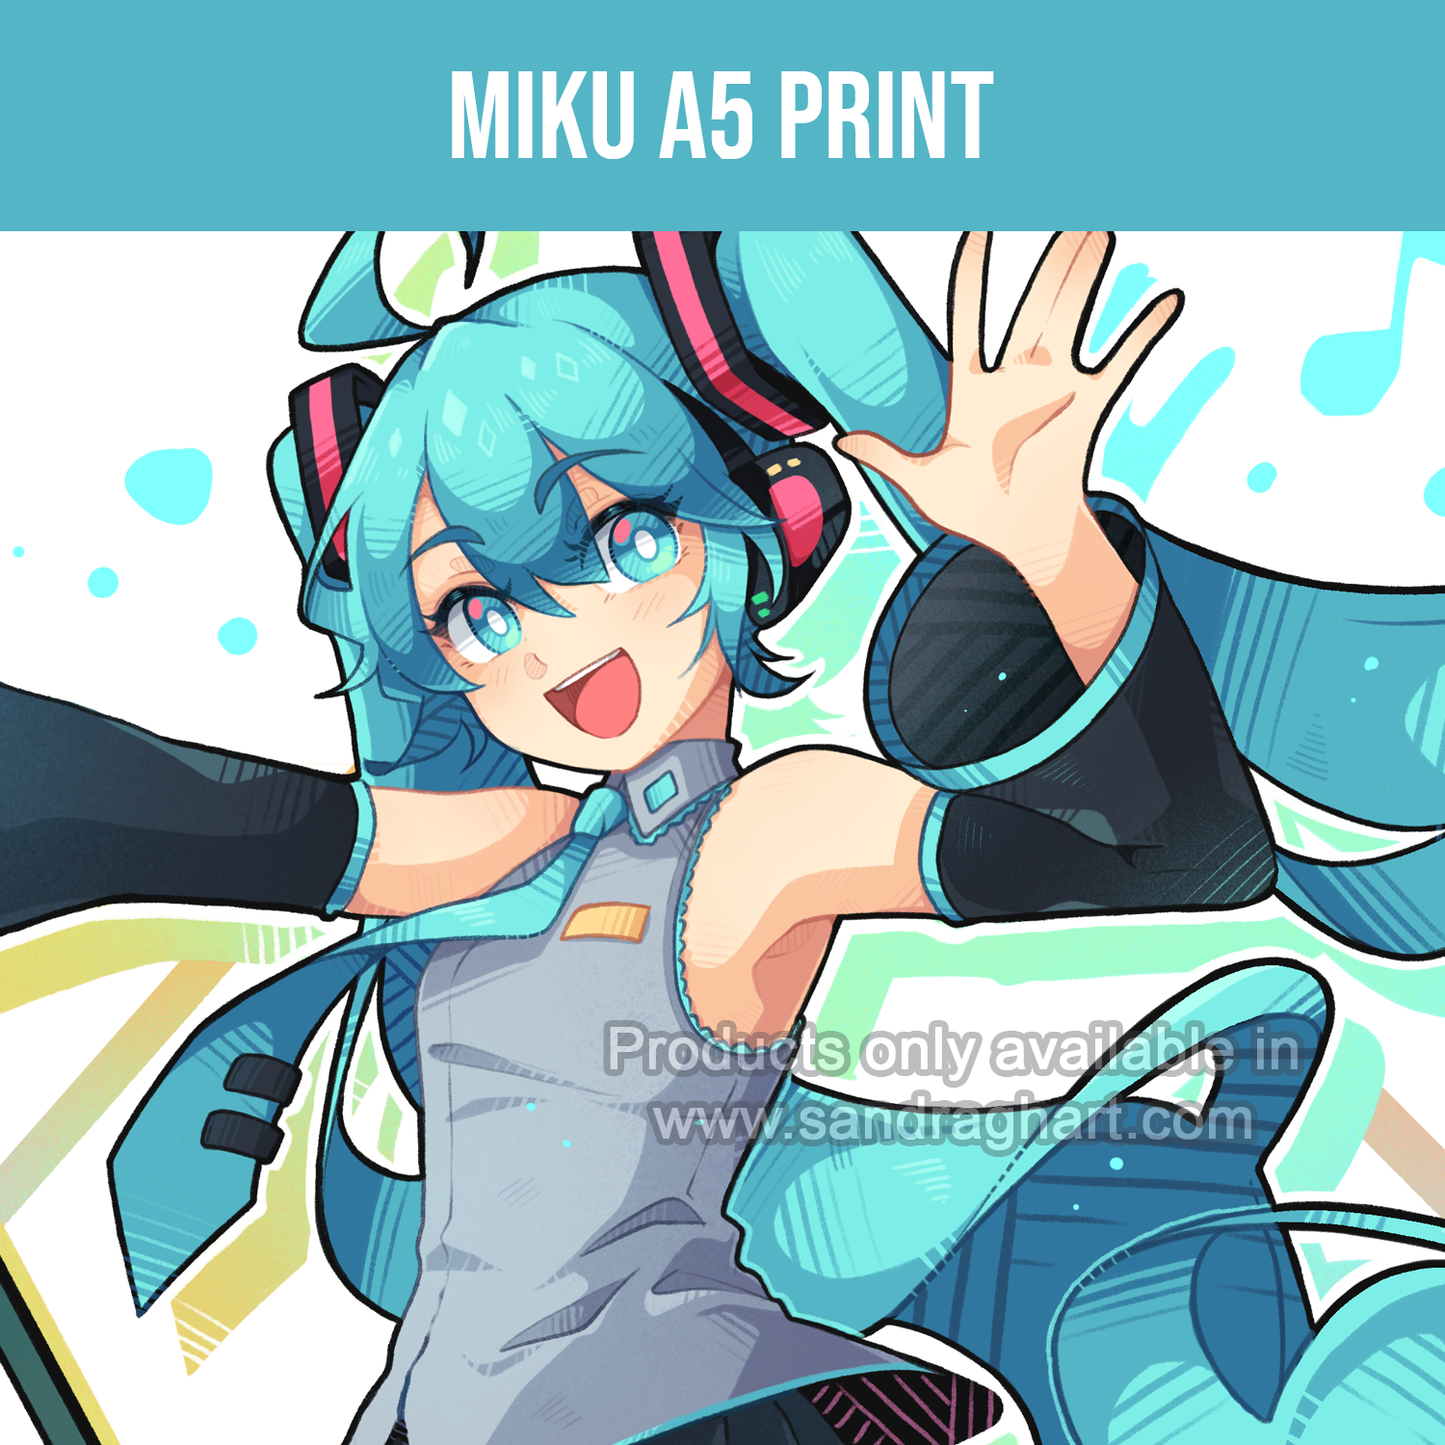 Miku A5 Print